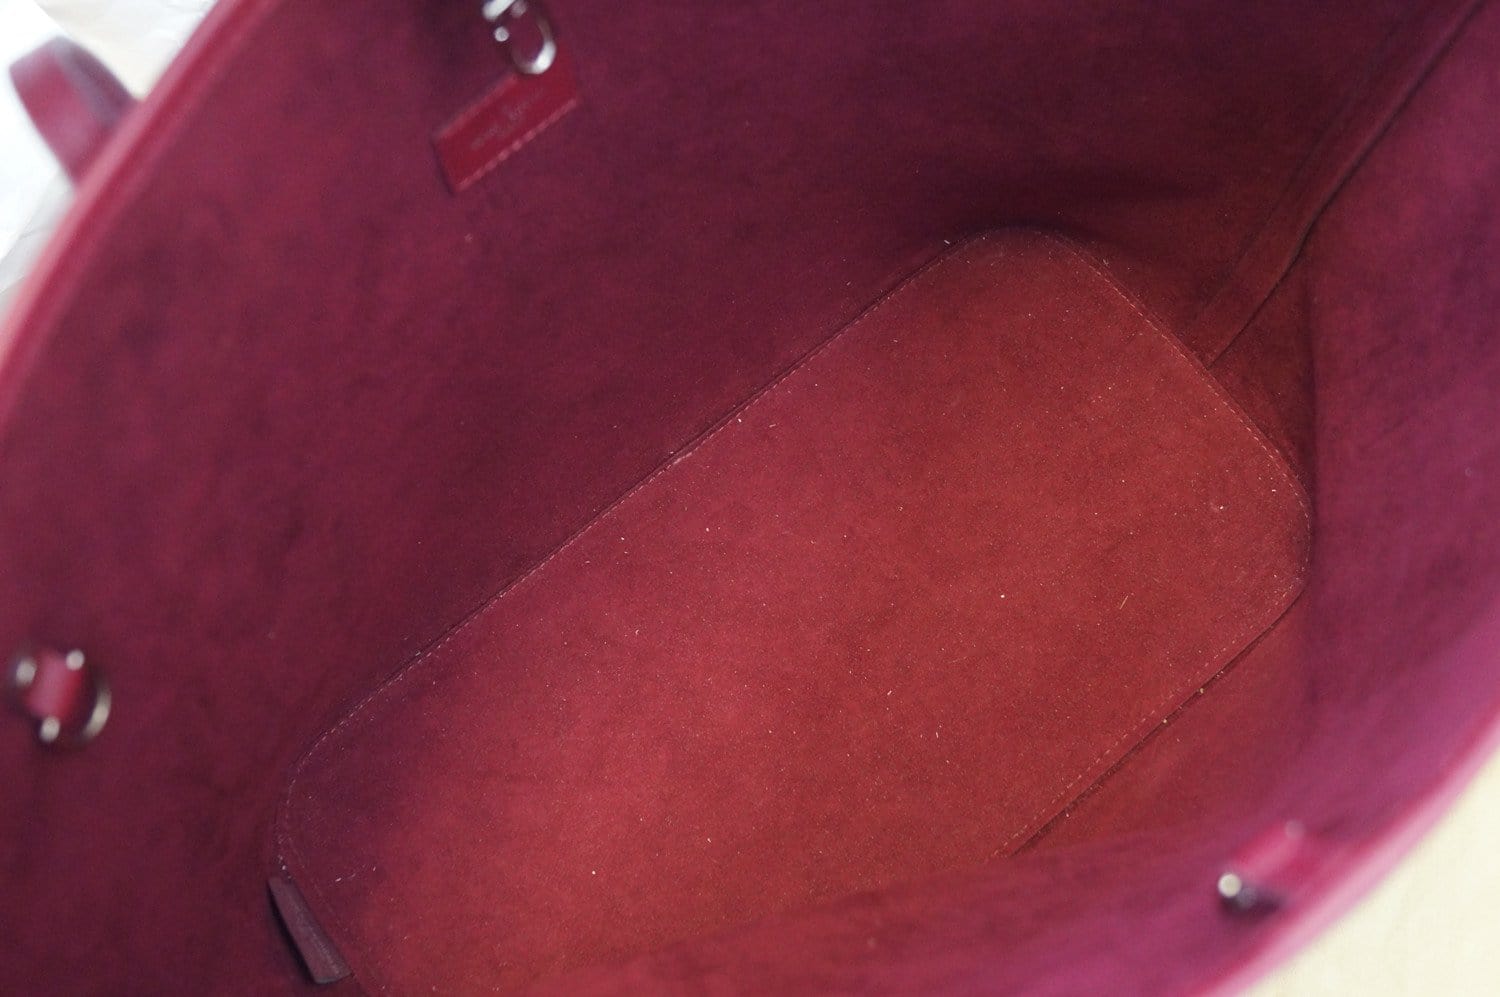 Louis Vuitton Fuchsia Epi Leather Neverfull PM Bag Louis Vuitton